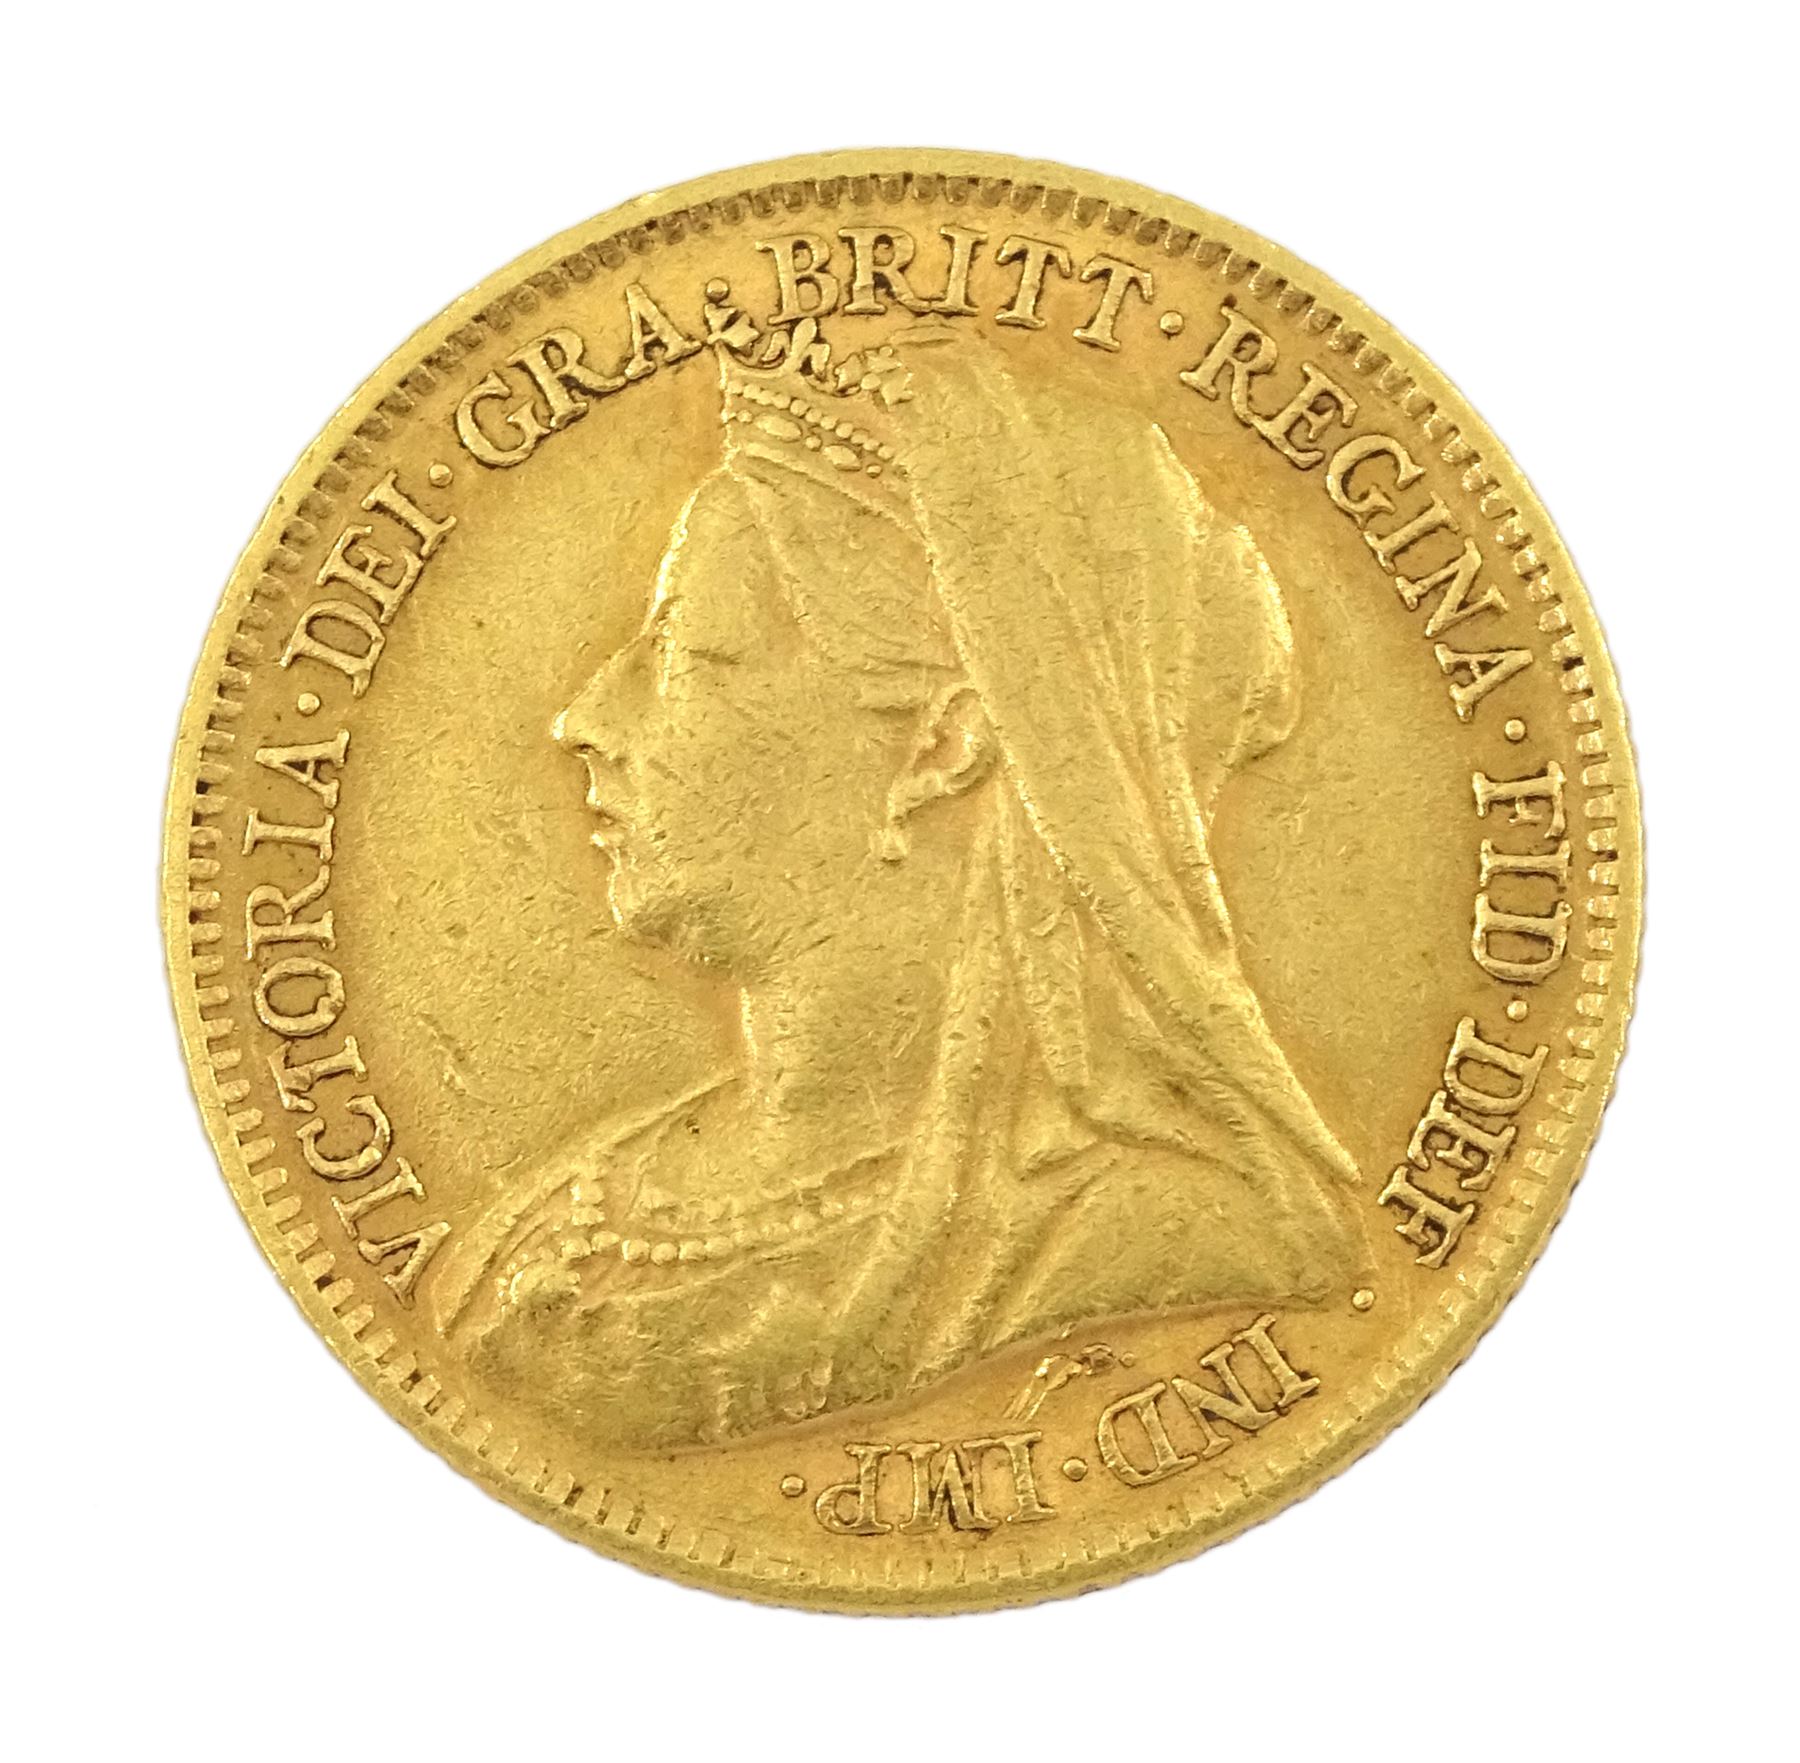 Queen Victoria 1899 gold half sovereign coin